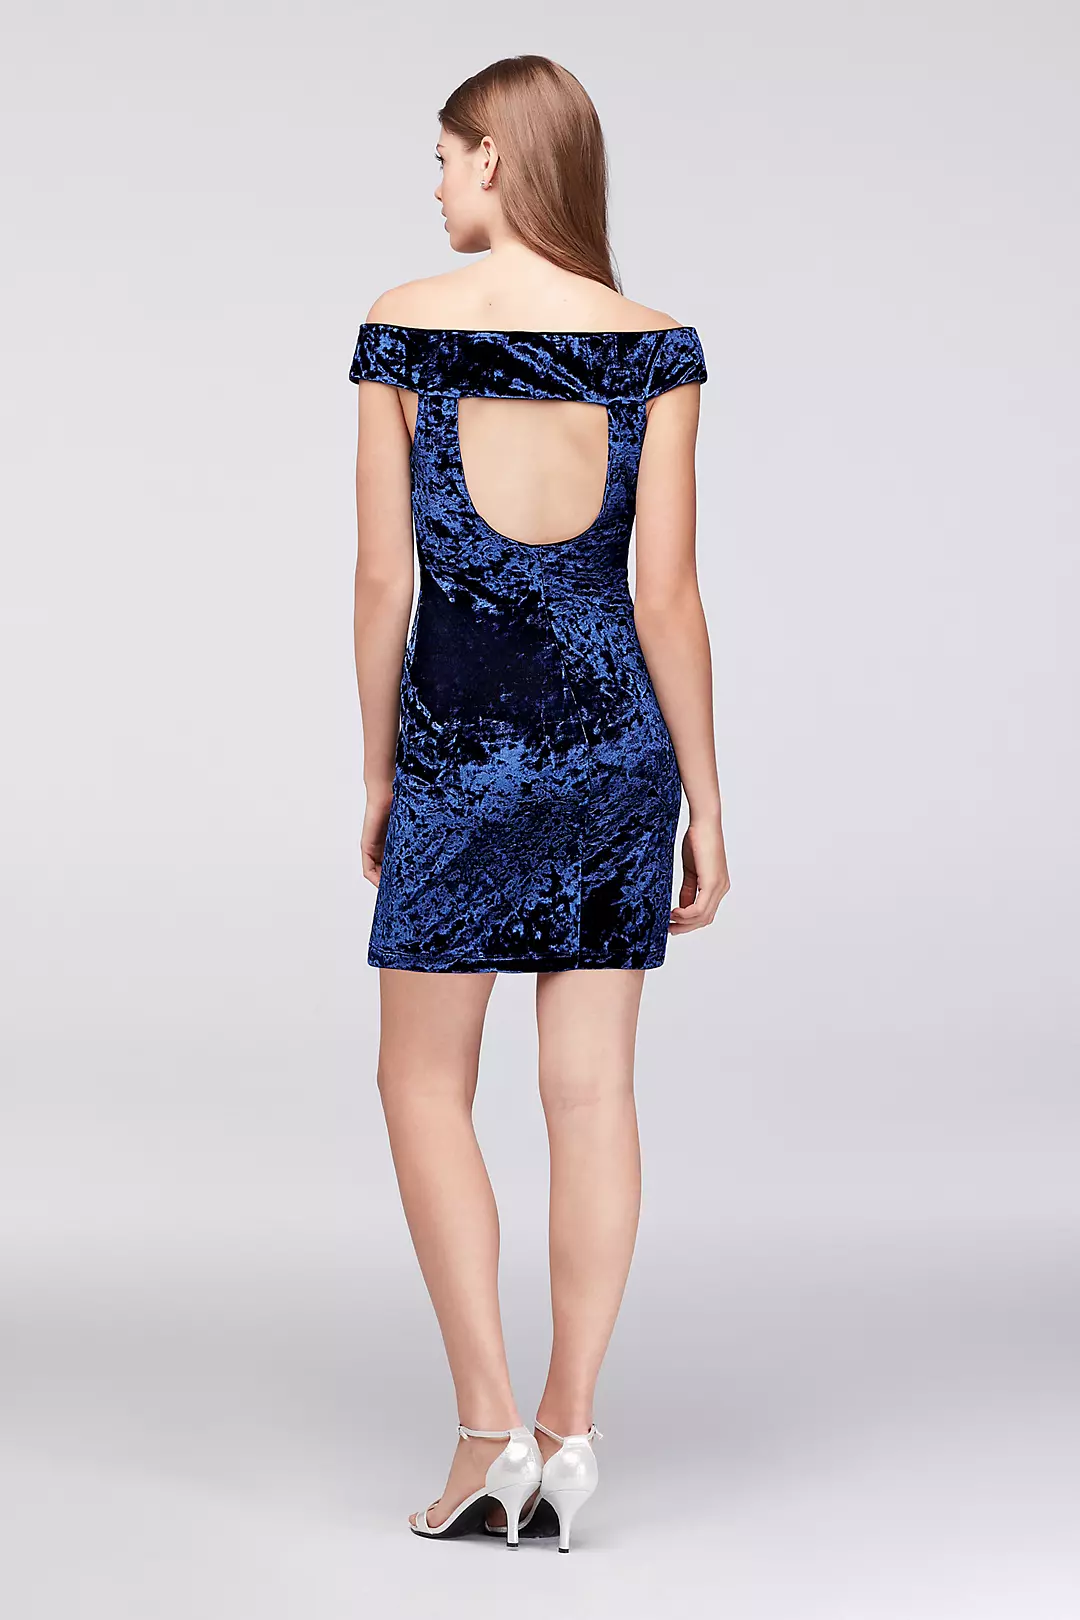 Off-the-Shoulder Crushed Velvet Mini Dress Image 2